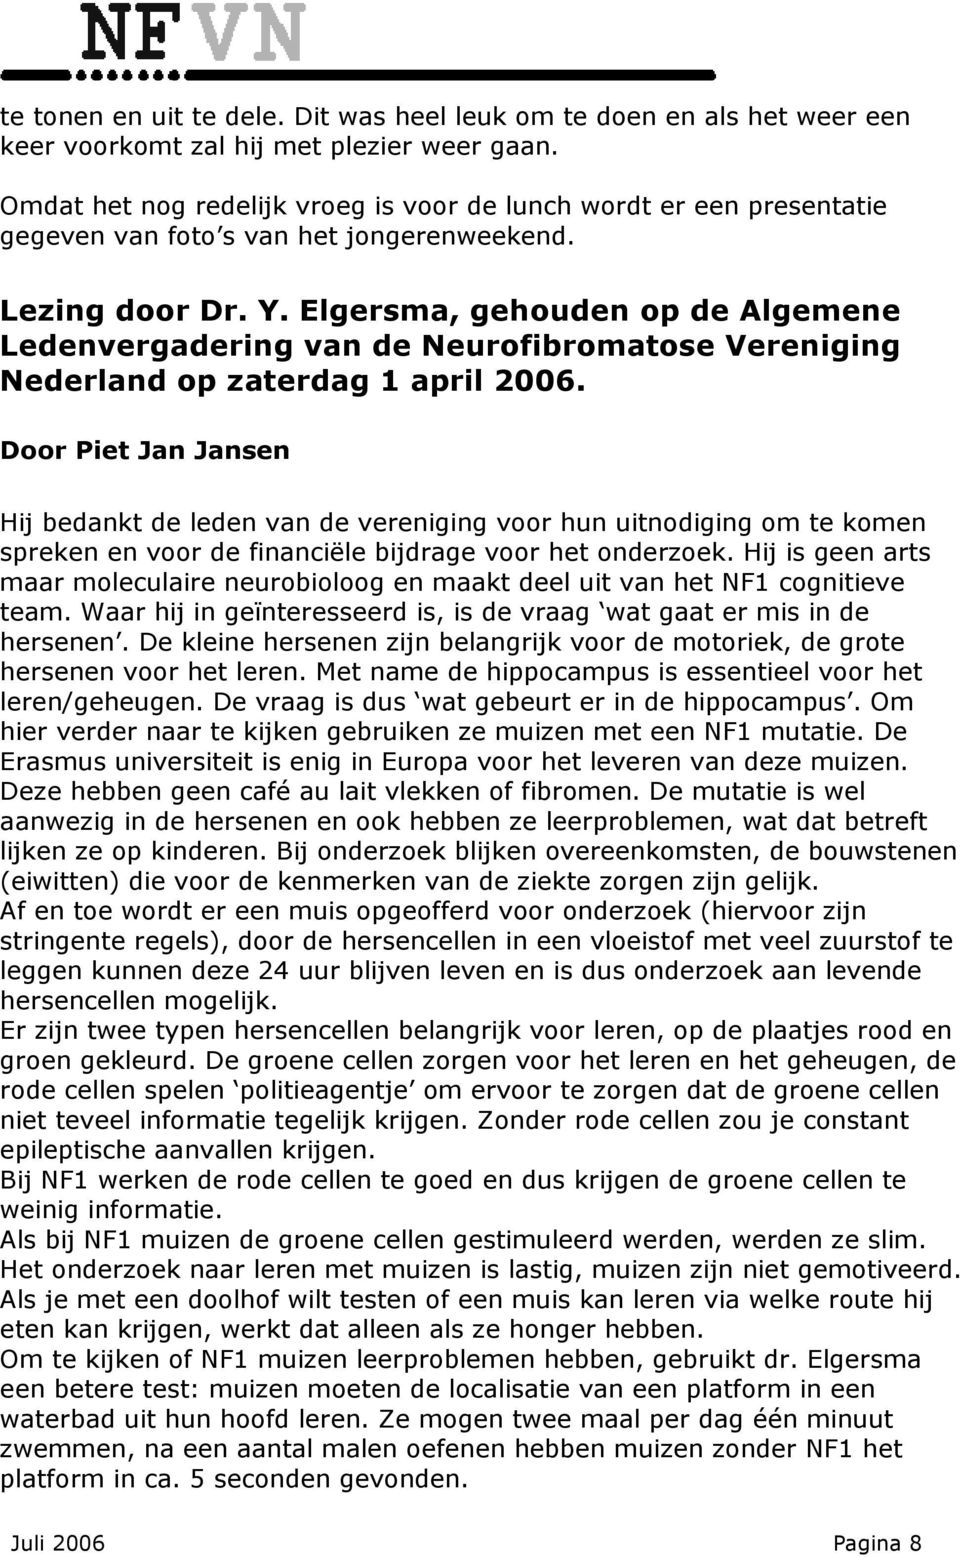 Elgersma, gehouden op de Algemene Ledenvergadering van de Neurofibromatose Vereniging Nederland op zaterdag 1 april 2006.